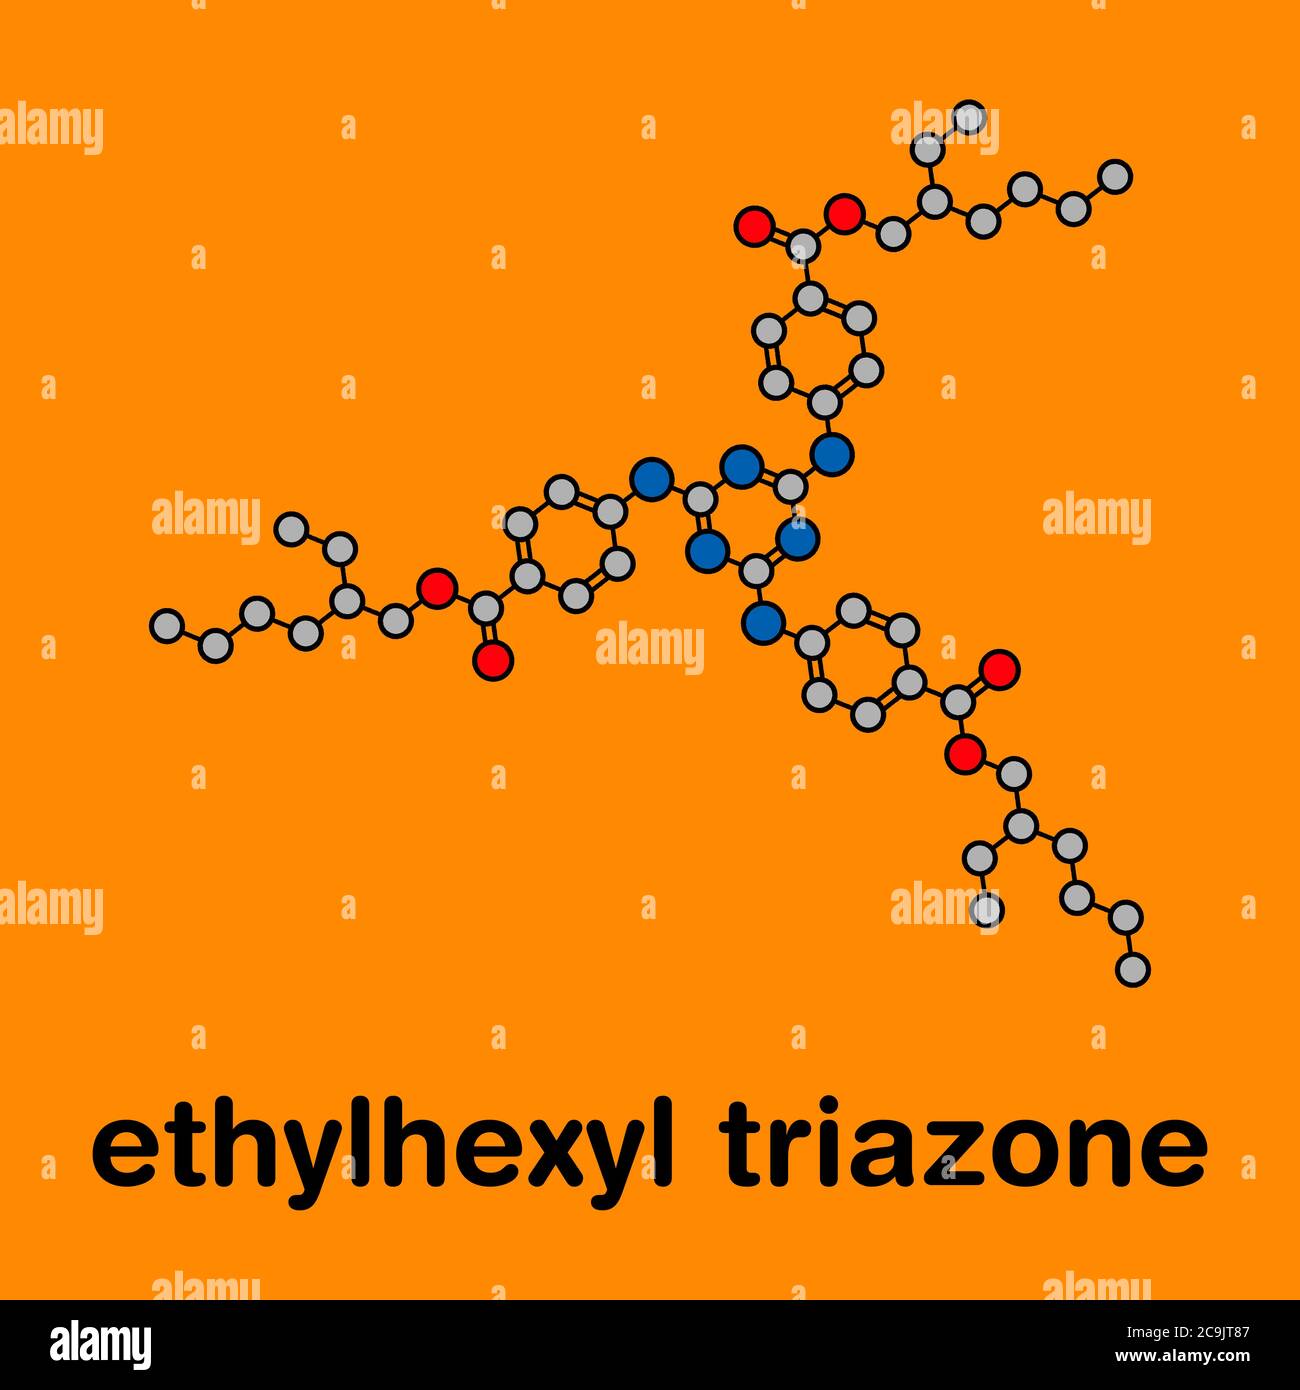 Ethylhexyltriazon Sonnenschutzmolekül (UV-Filter). Stilisierte  Skelettformel (chemische Struktur). Atome werden als farbcodierte Kreise  mit Dicke dargestellt Stockfotografie - Alamy